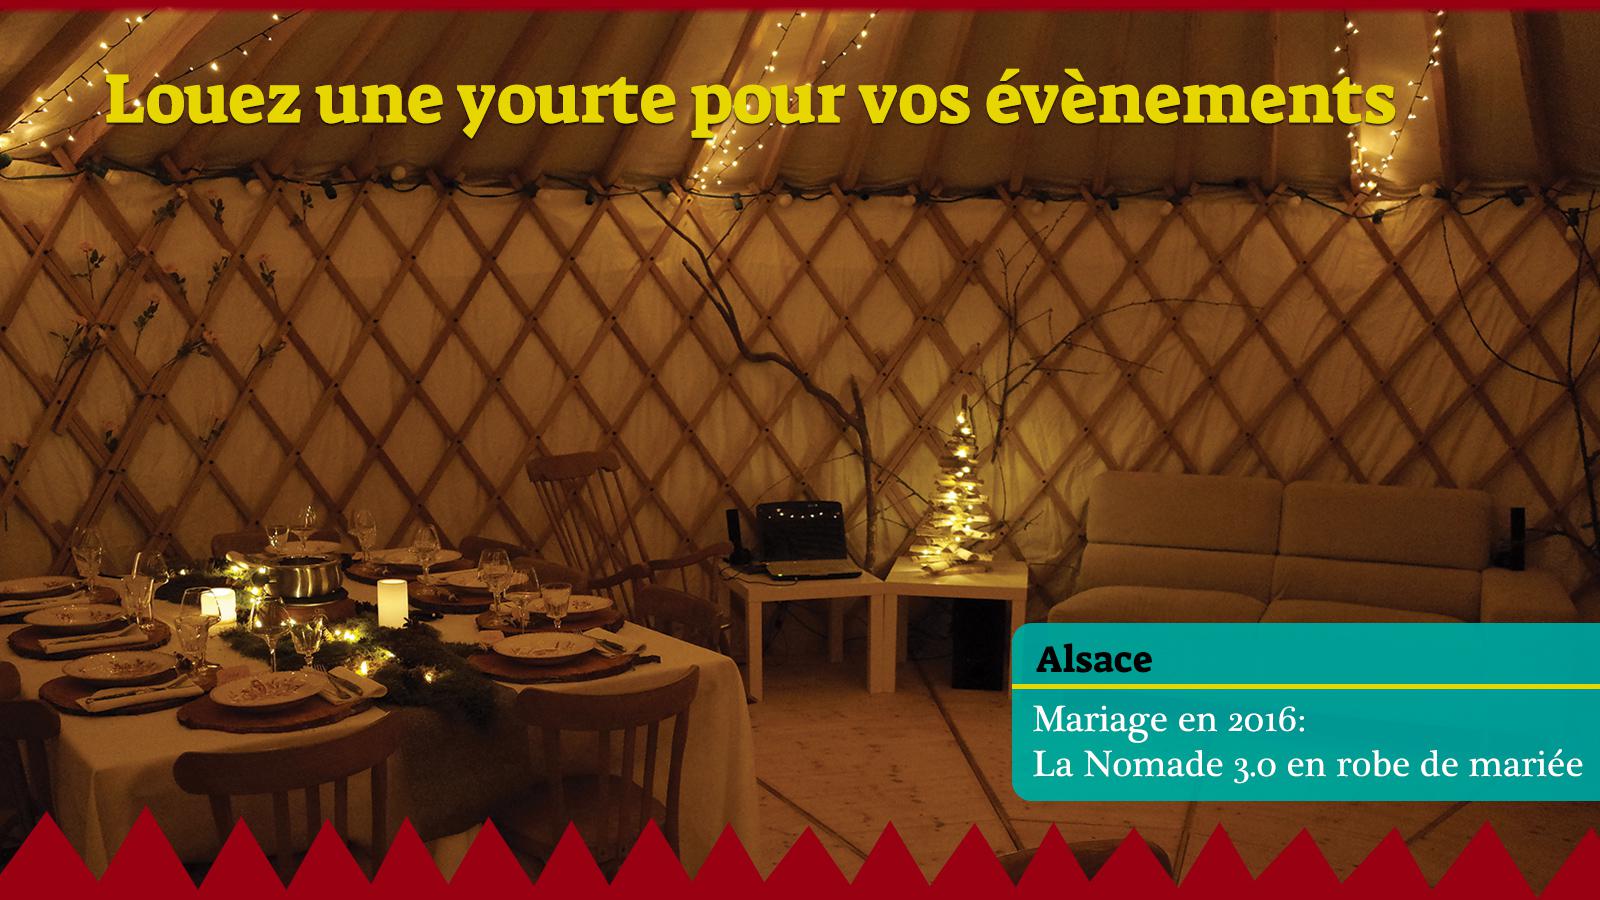 Yourte la Nomade 3.0 pour un mariage en Alsace